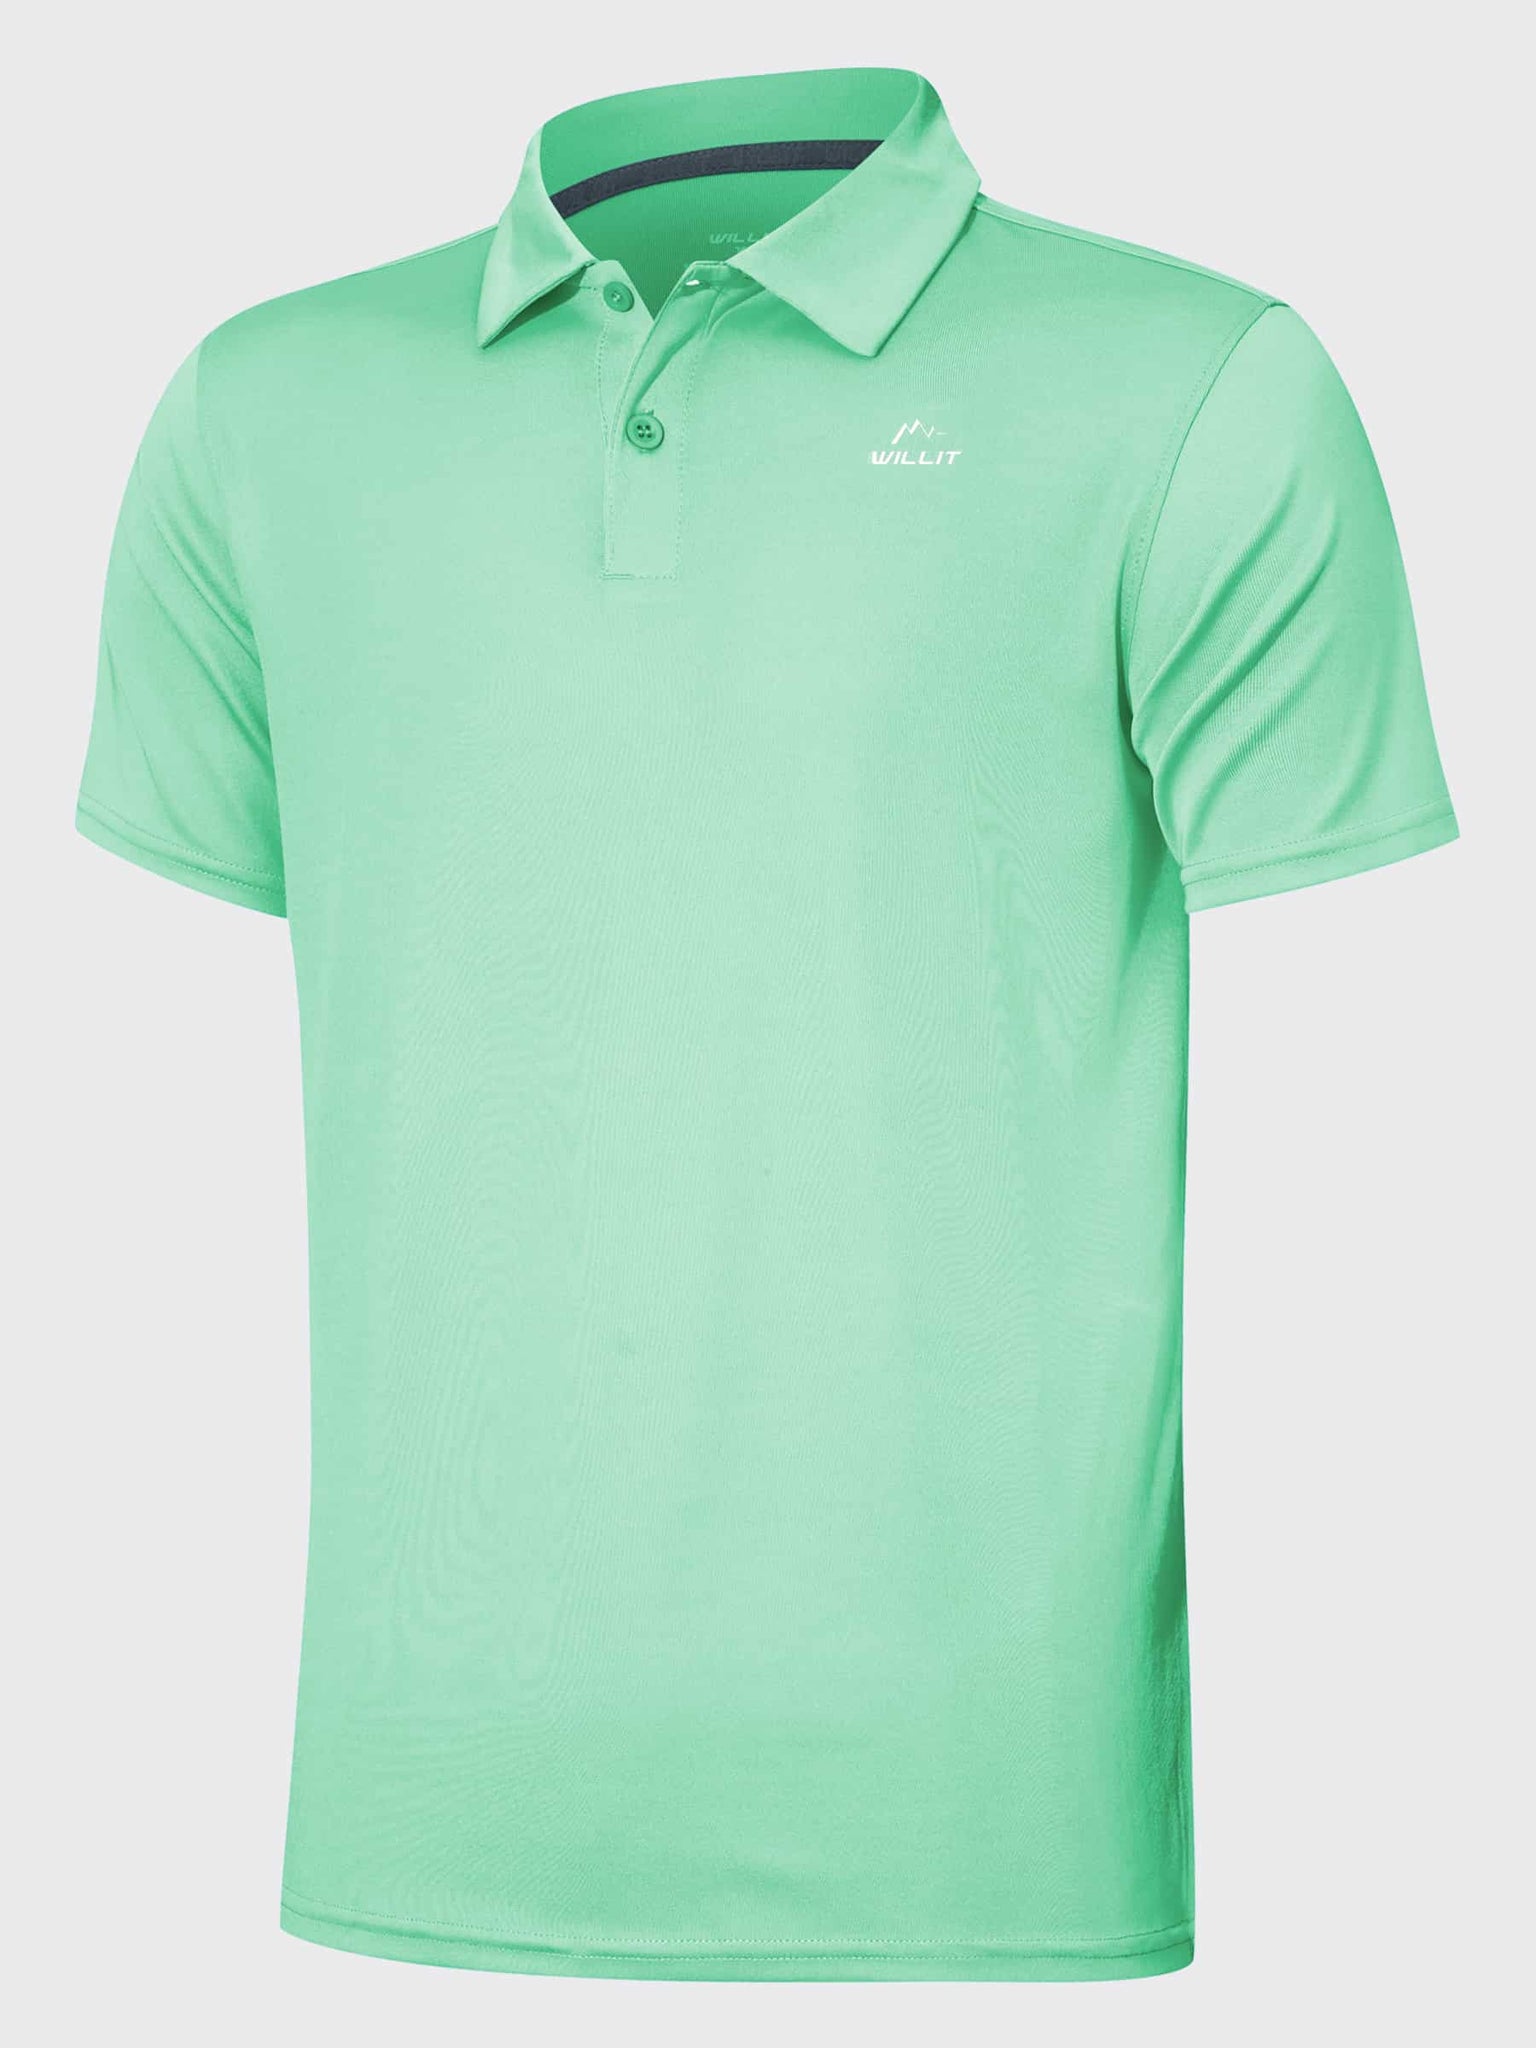 Youth Golf Polo Sun Shirts_LightGreen_laydown1